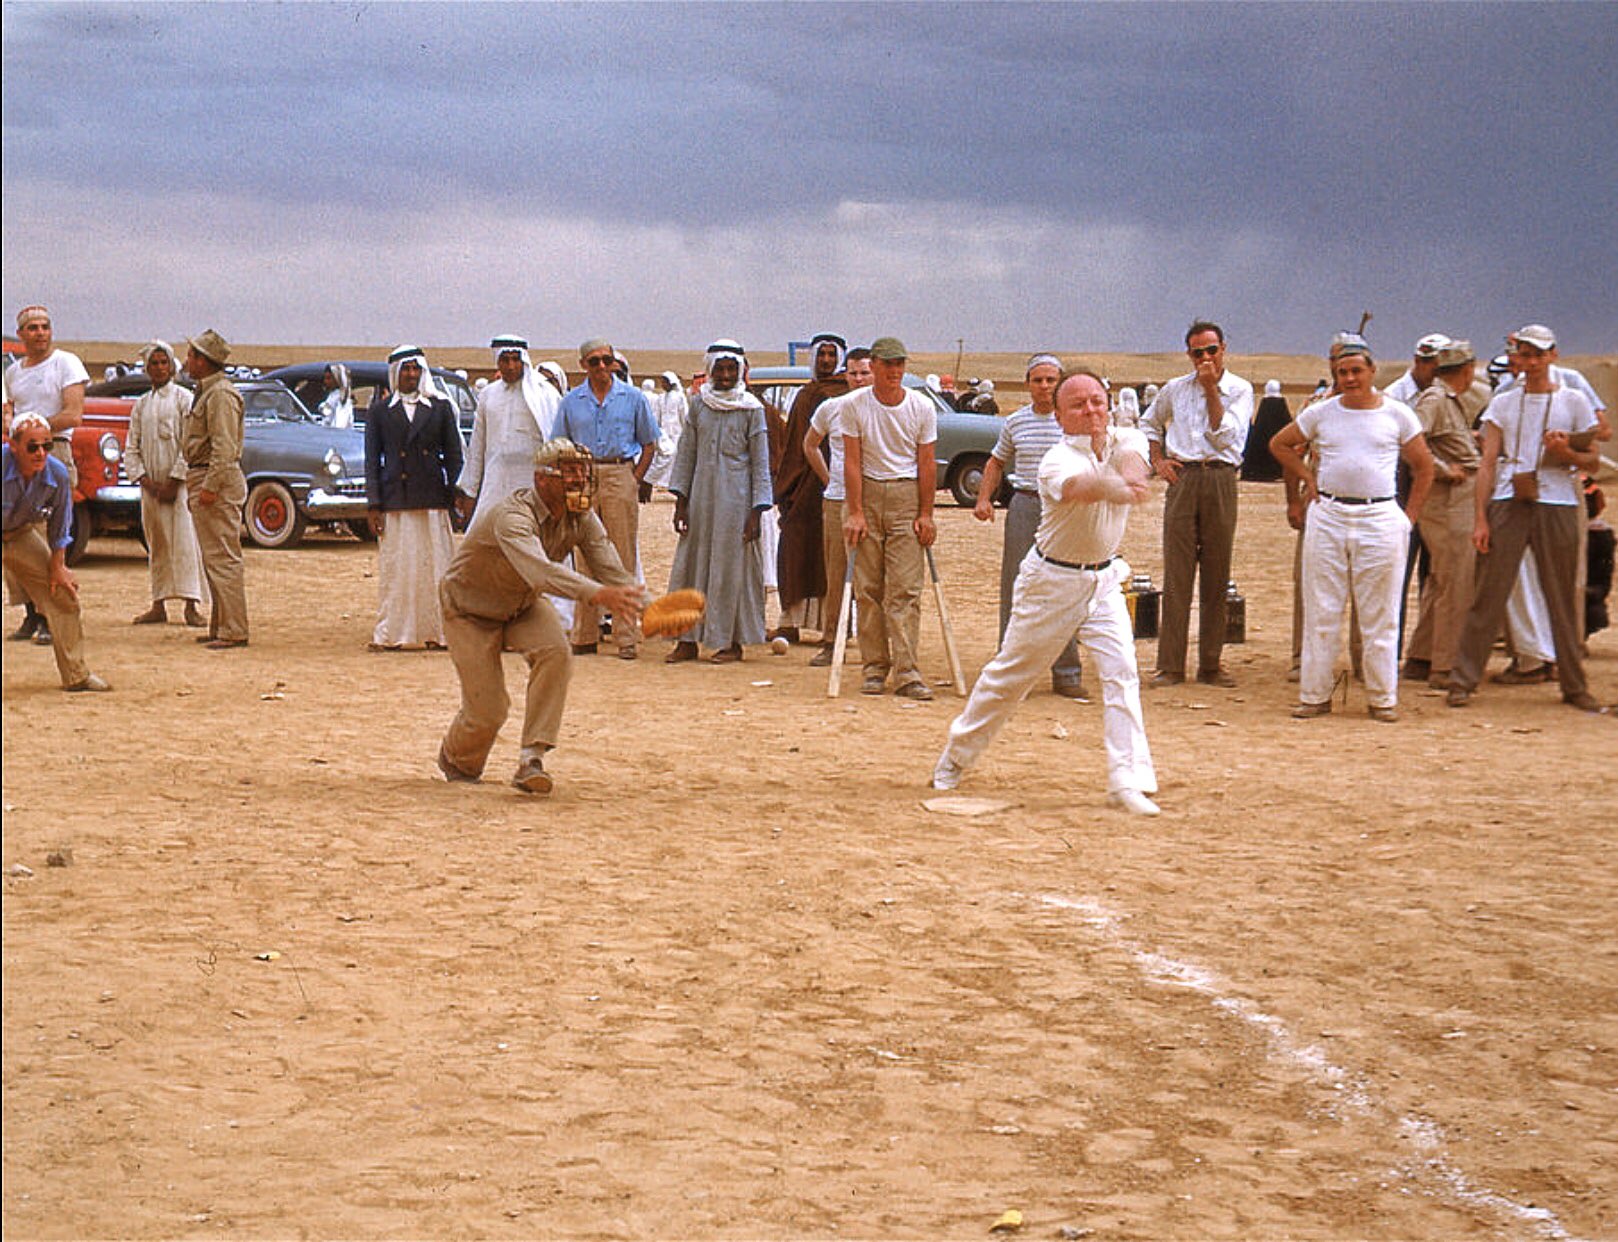 Crown prince Saud held a baseball game  with the local Saudi team - 1950